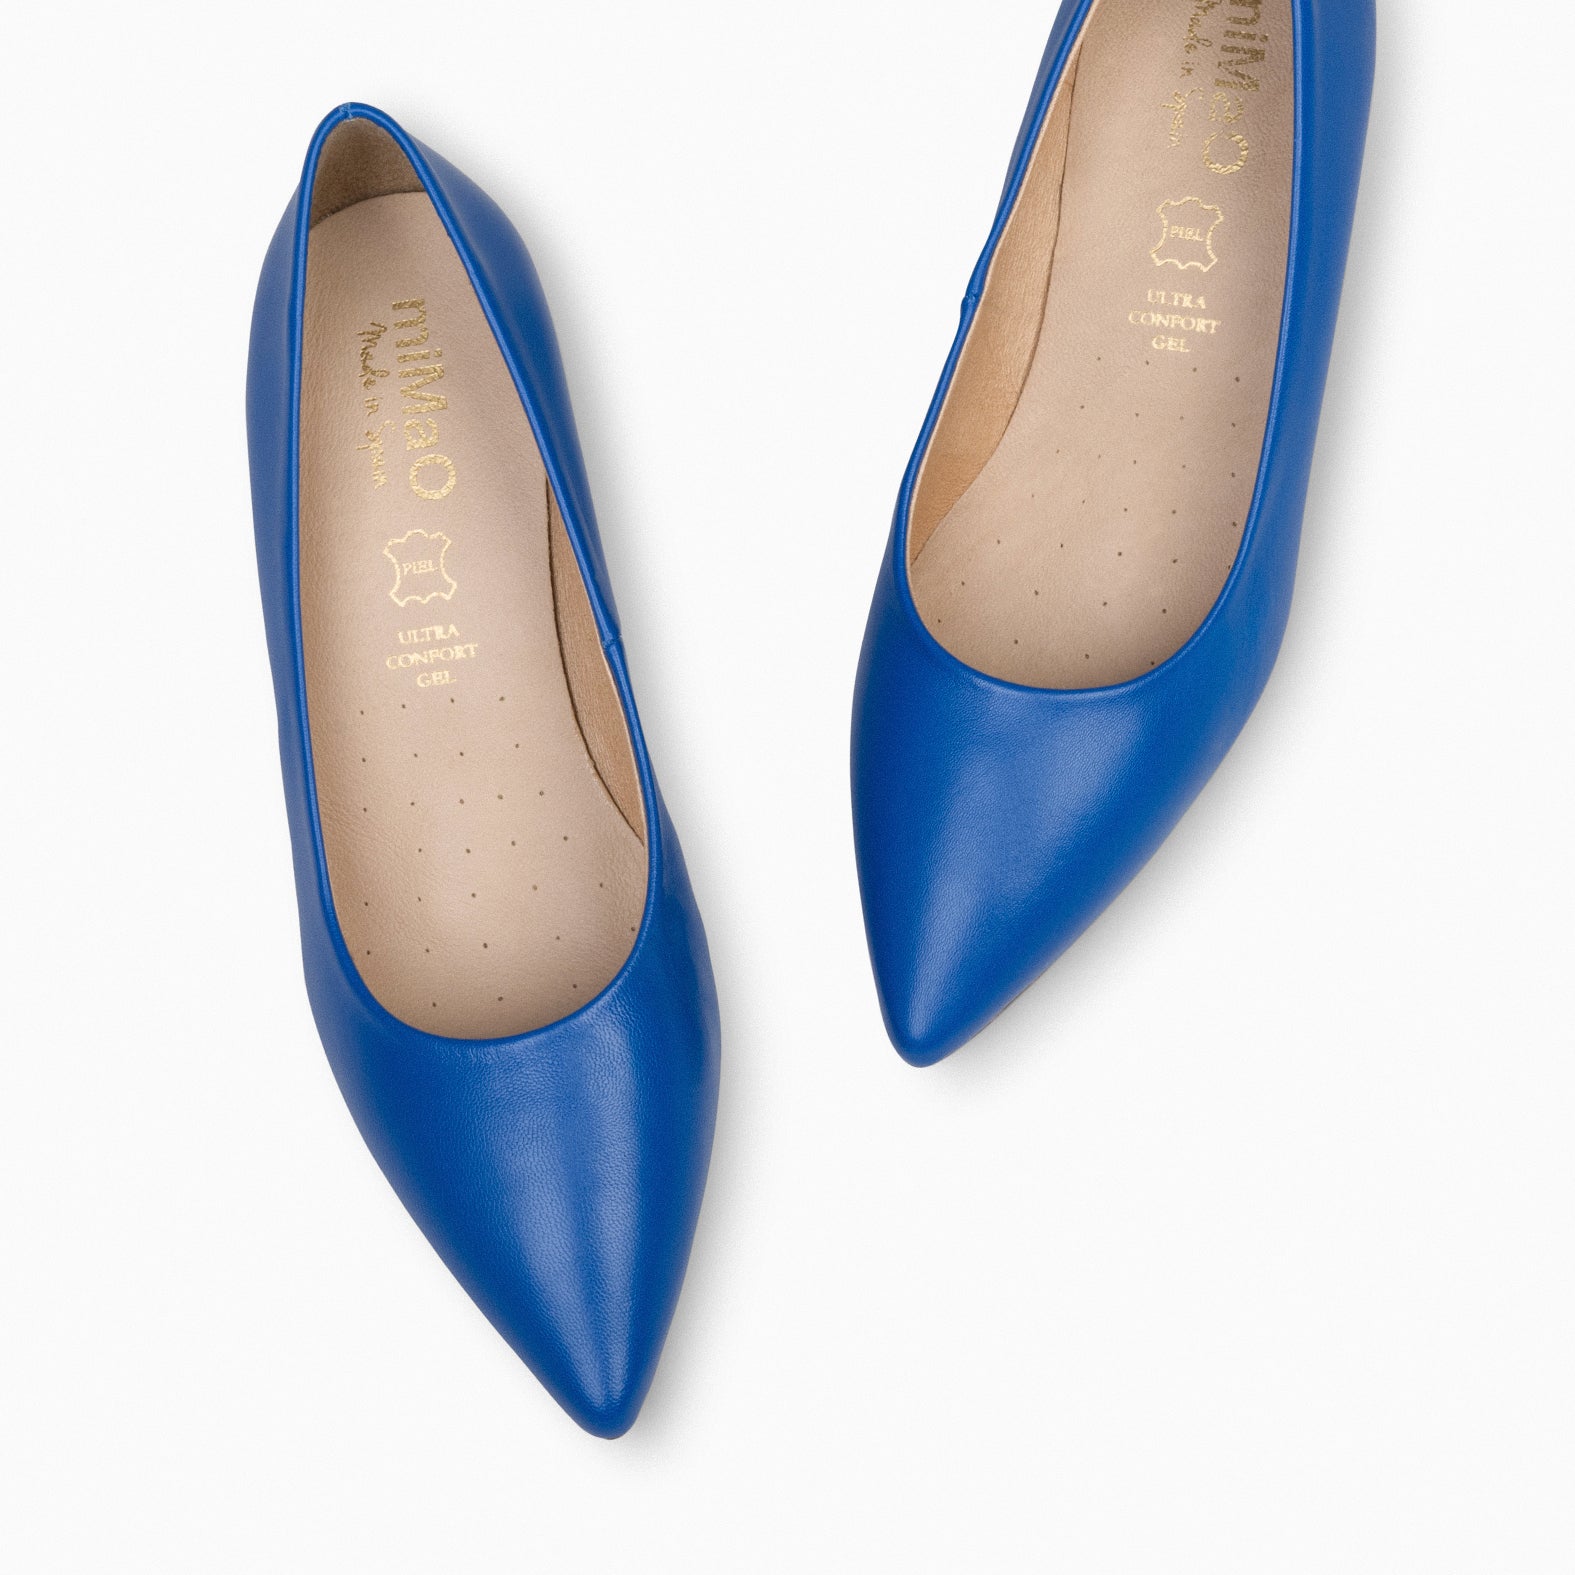 URBAN KITTEN – BLUE nappa leather kitten heels